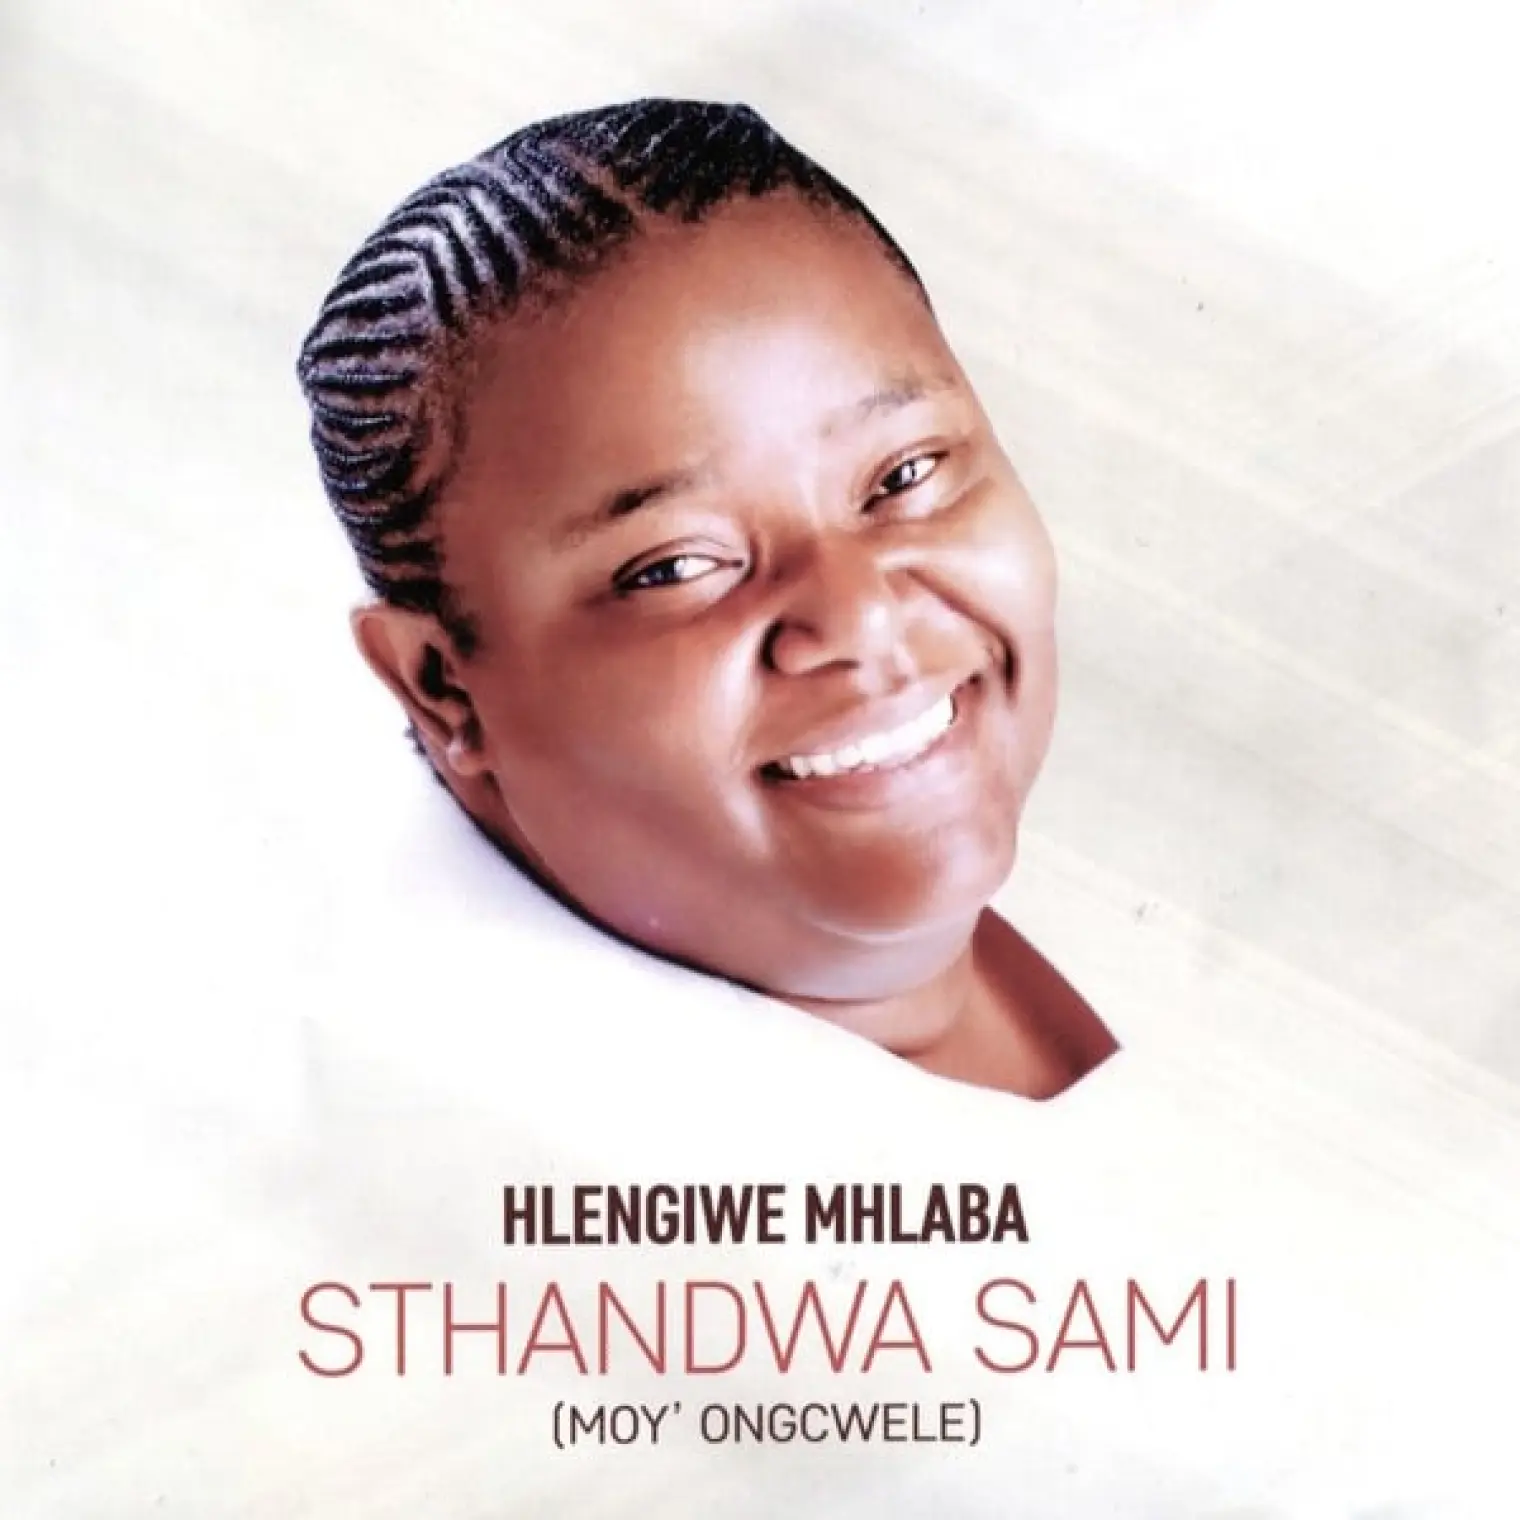 Sthandwa Sami Moy Ongcwele -  Hlengiwe Mhlaba 